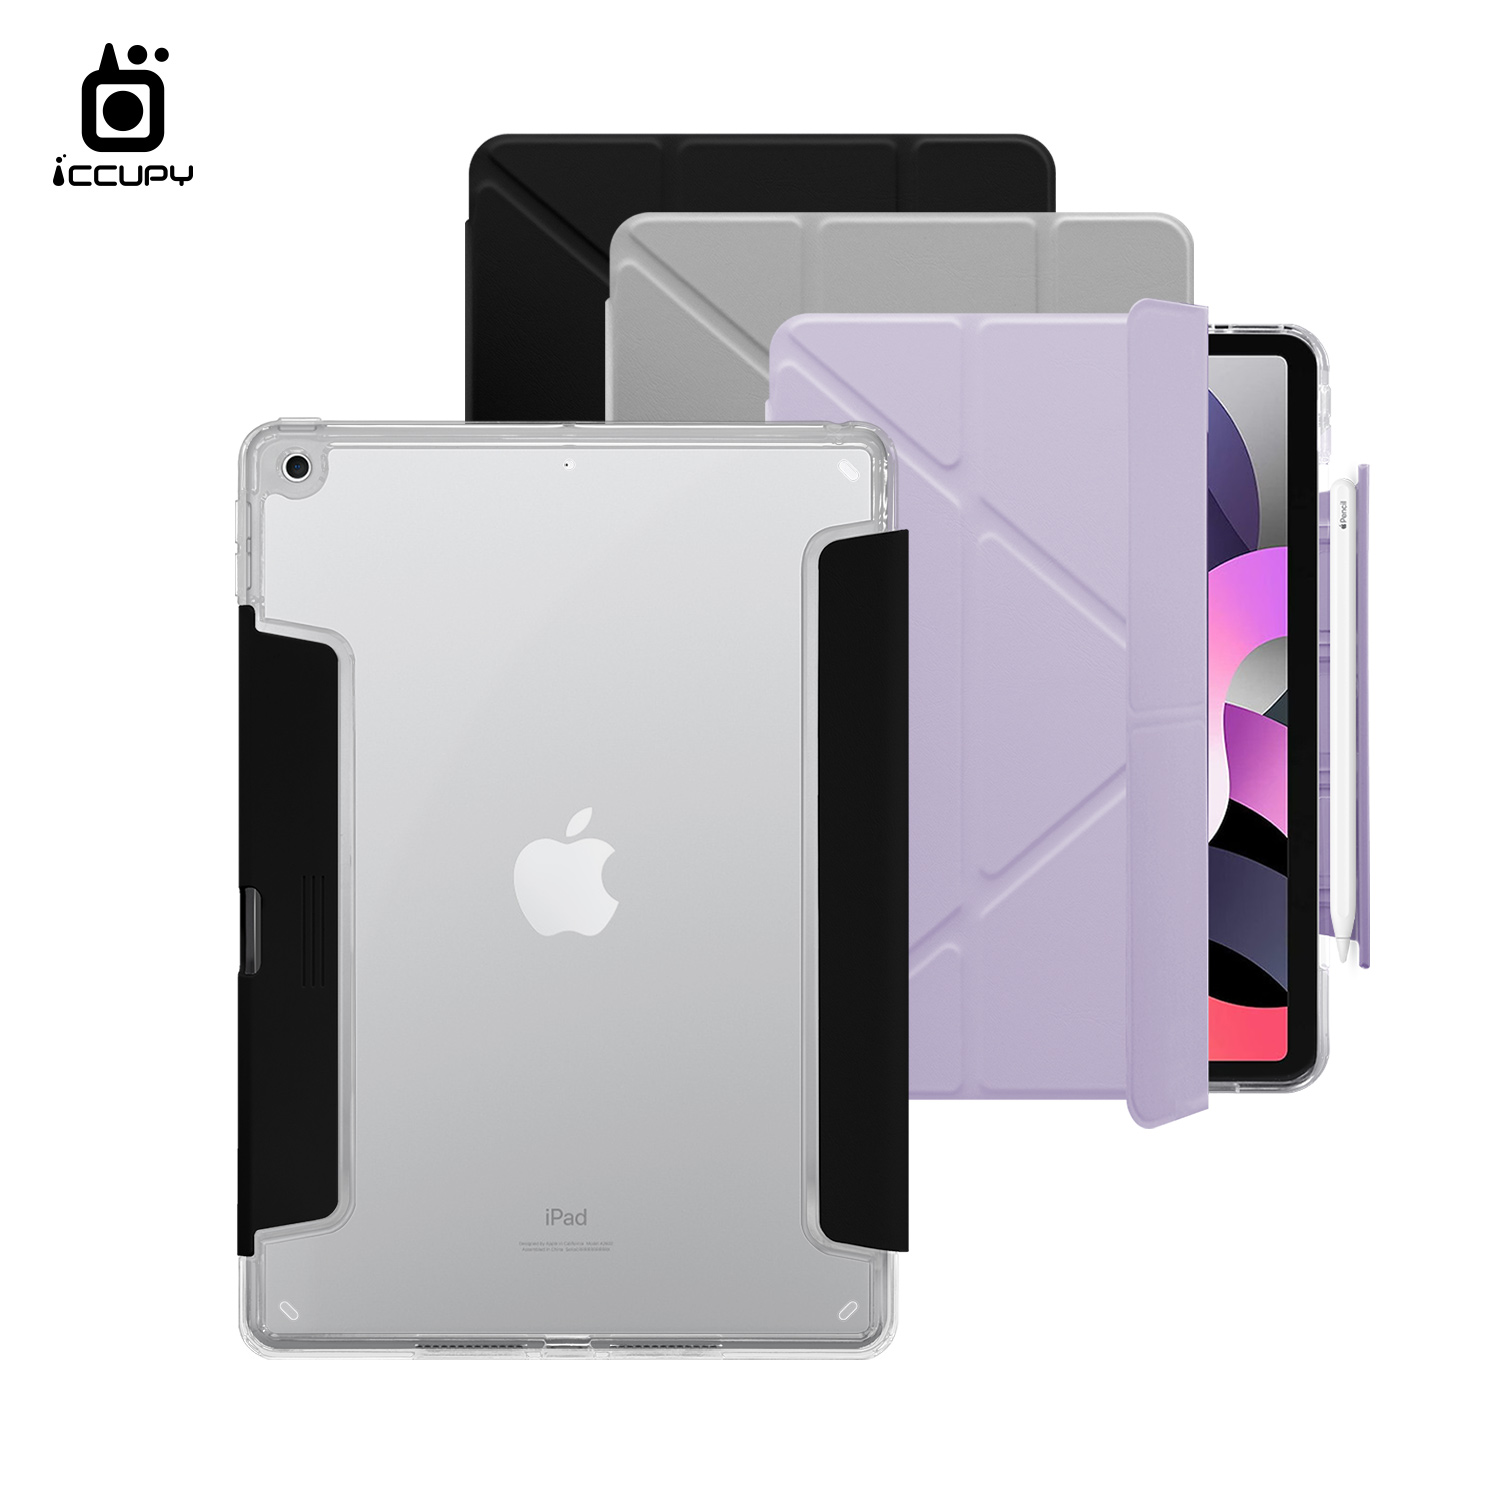 【iCCUPY黑占盾For iPad】黑占盾平板HD系列-隱藏式抽屜筆槽(共三色) For iPad 第8代 10.2吋